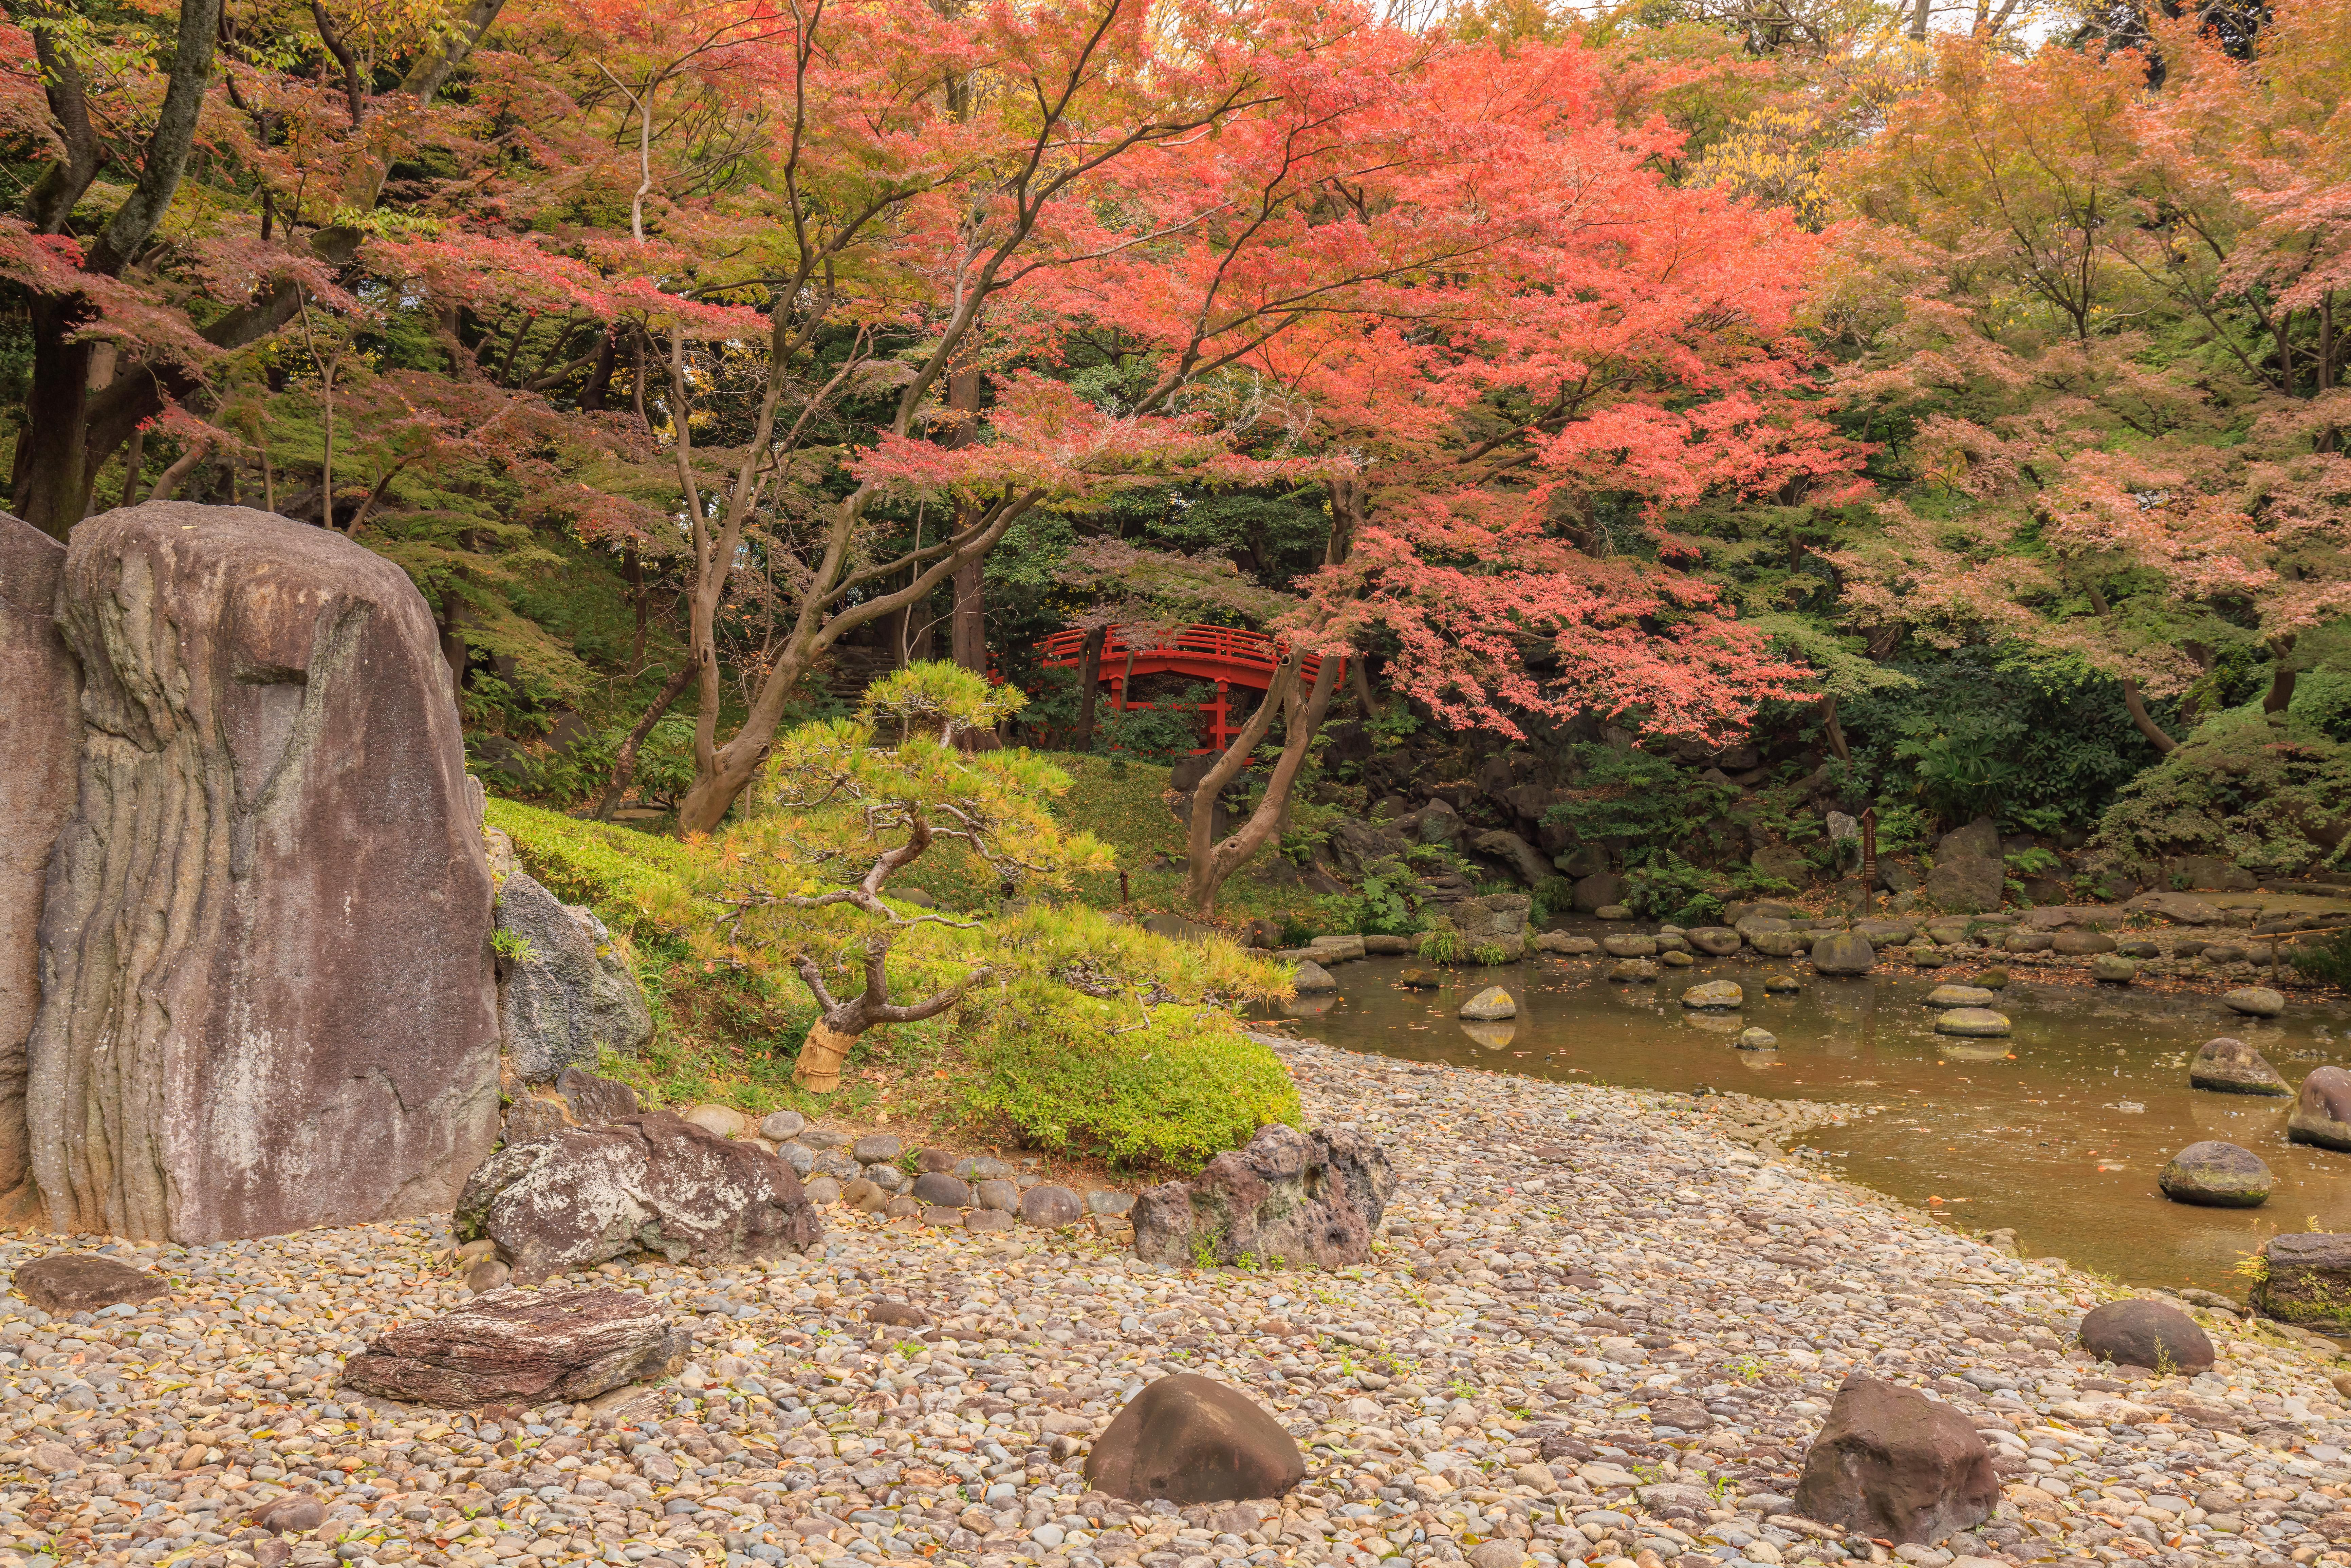 Koraku-en and the Meiji Jingu Inner Garden